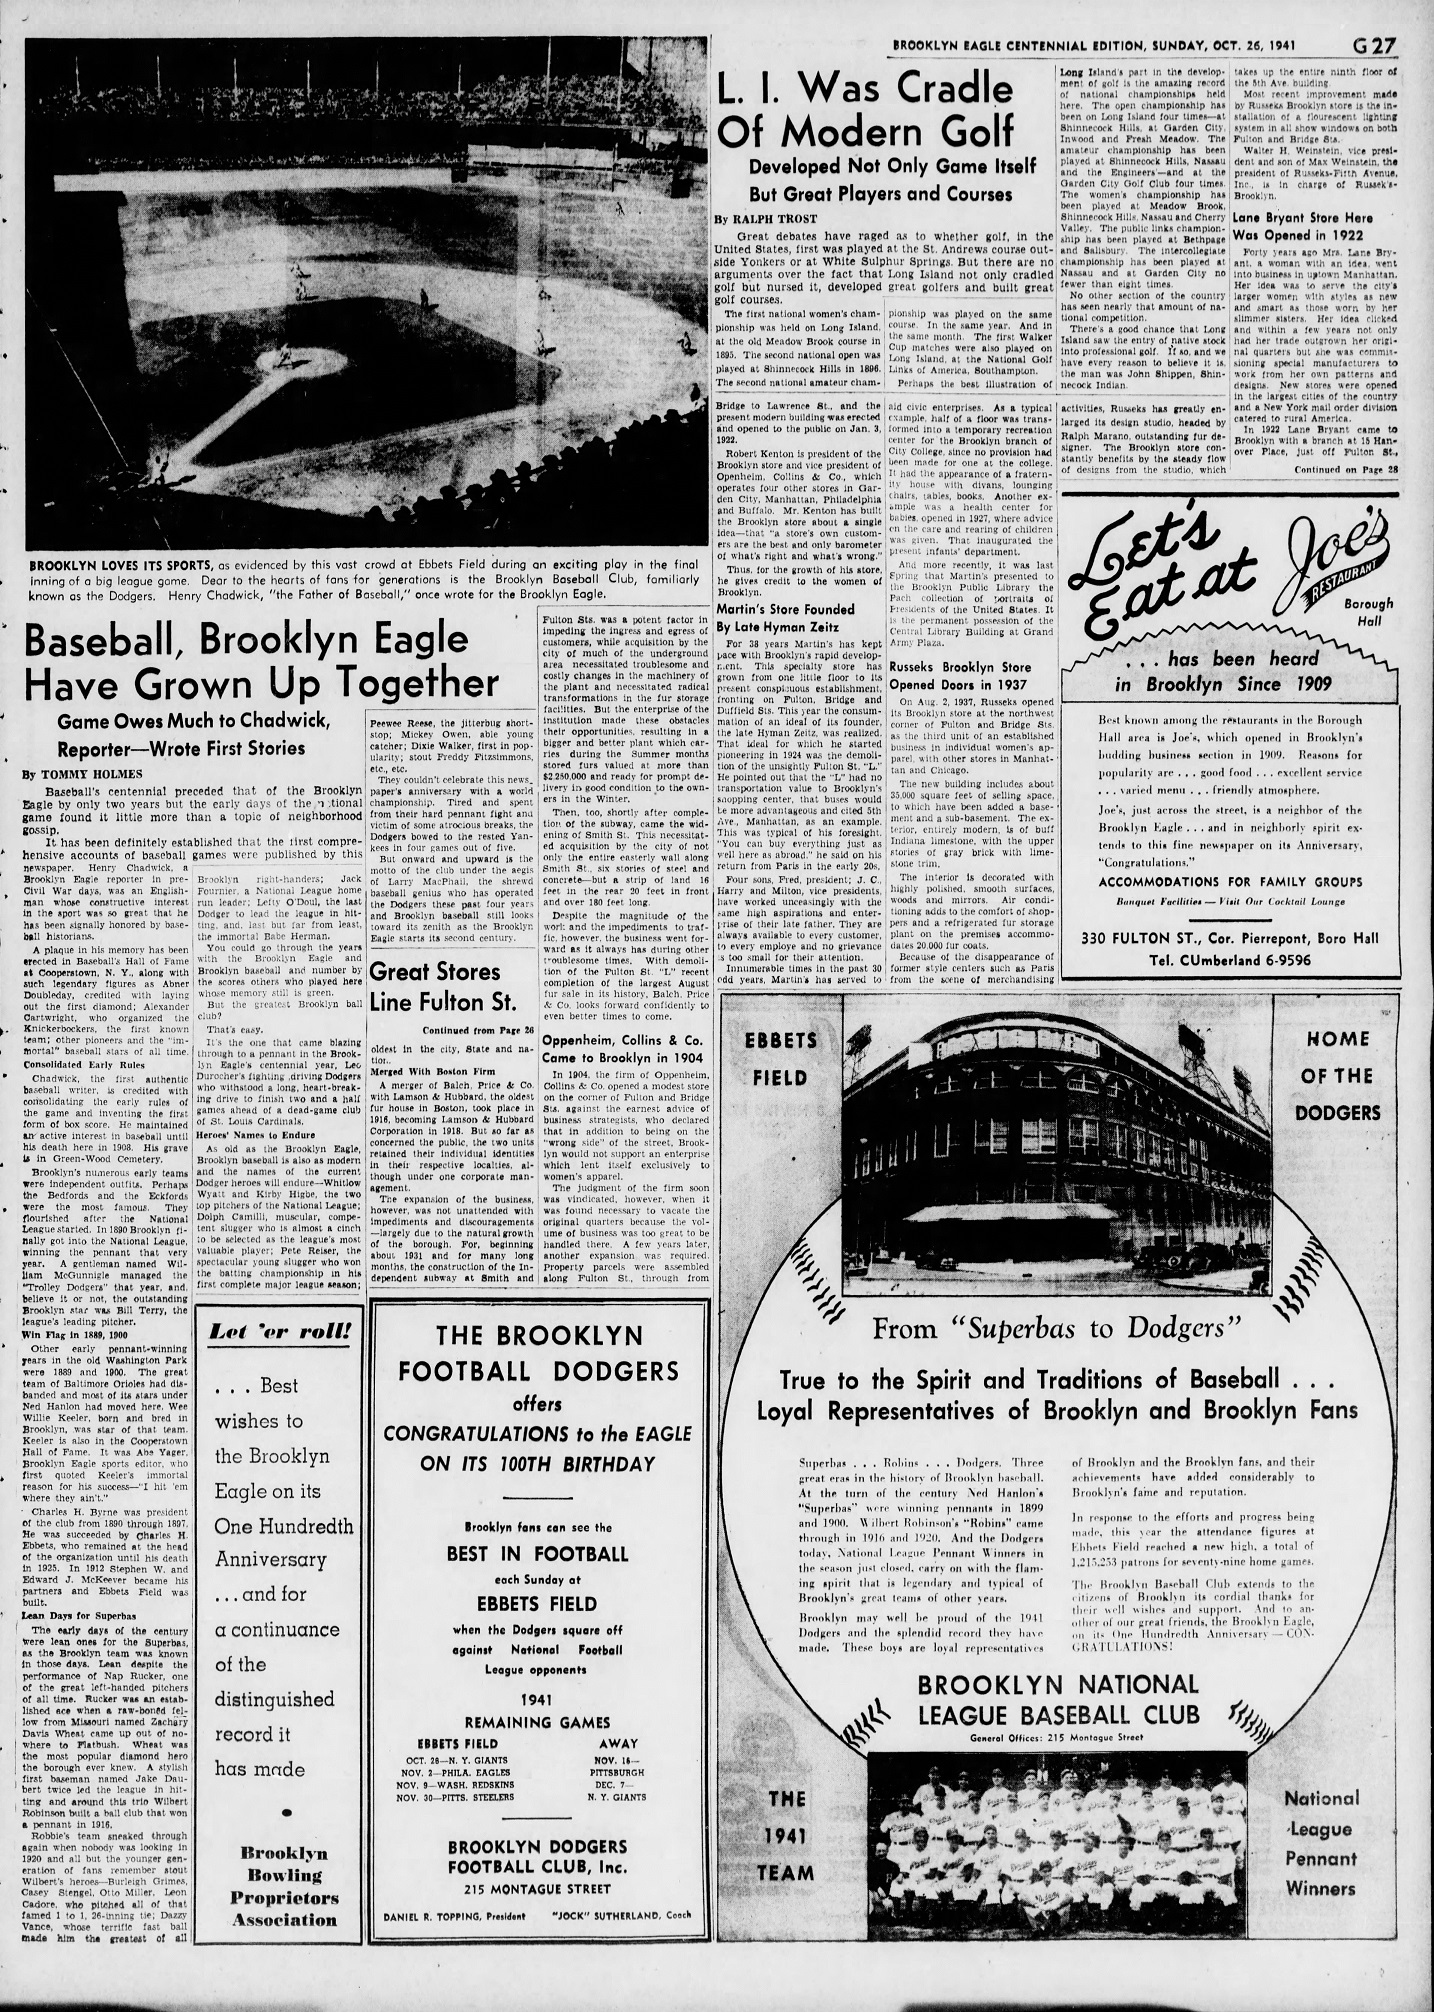 The_Brooklyn_Daily_Eagle_Sun__Oct_26__1941_(15).jpg